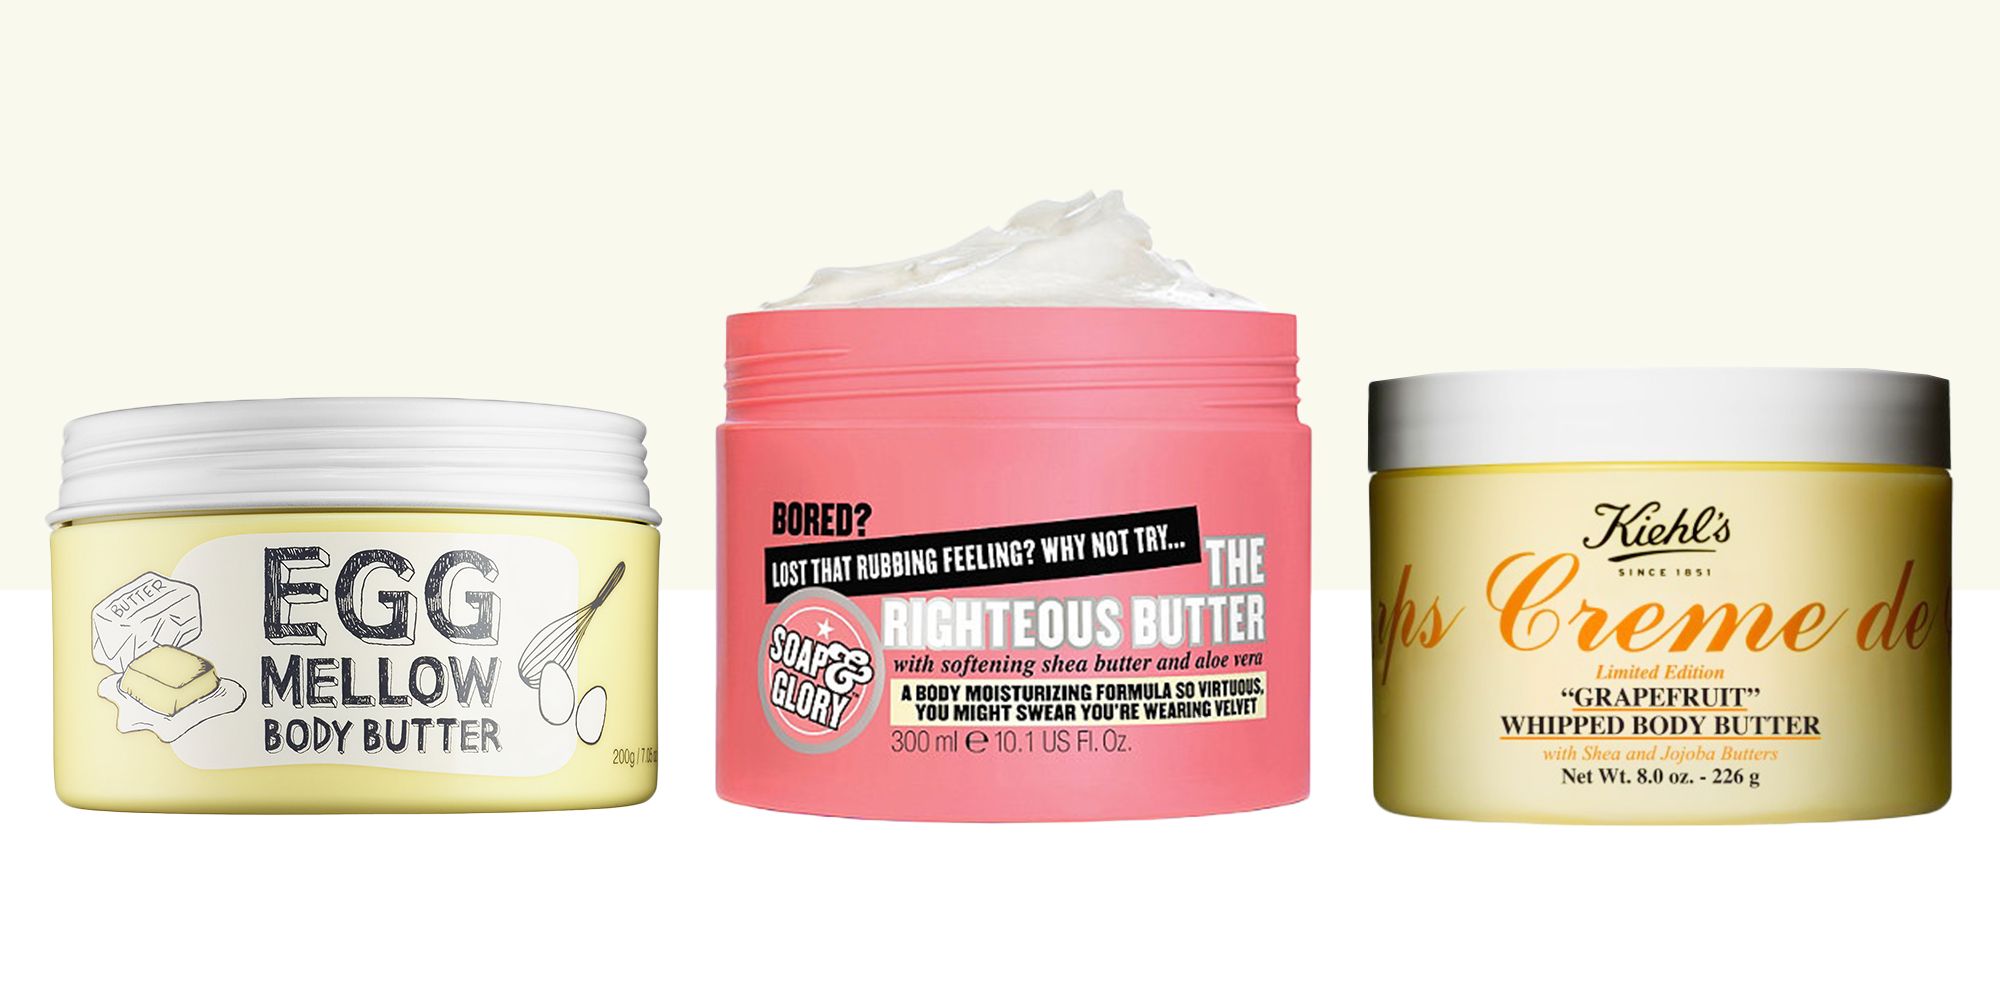 Winst Omringd boete 11 Best Body Butters in 2018 - Hydrating Body Butters for Soft Skin